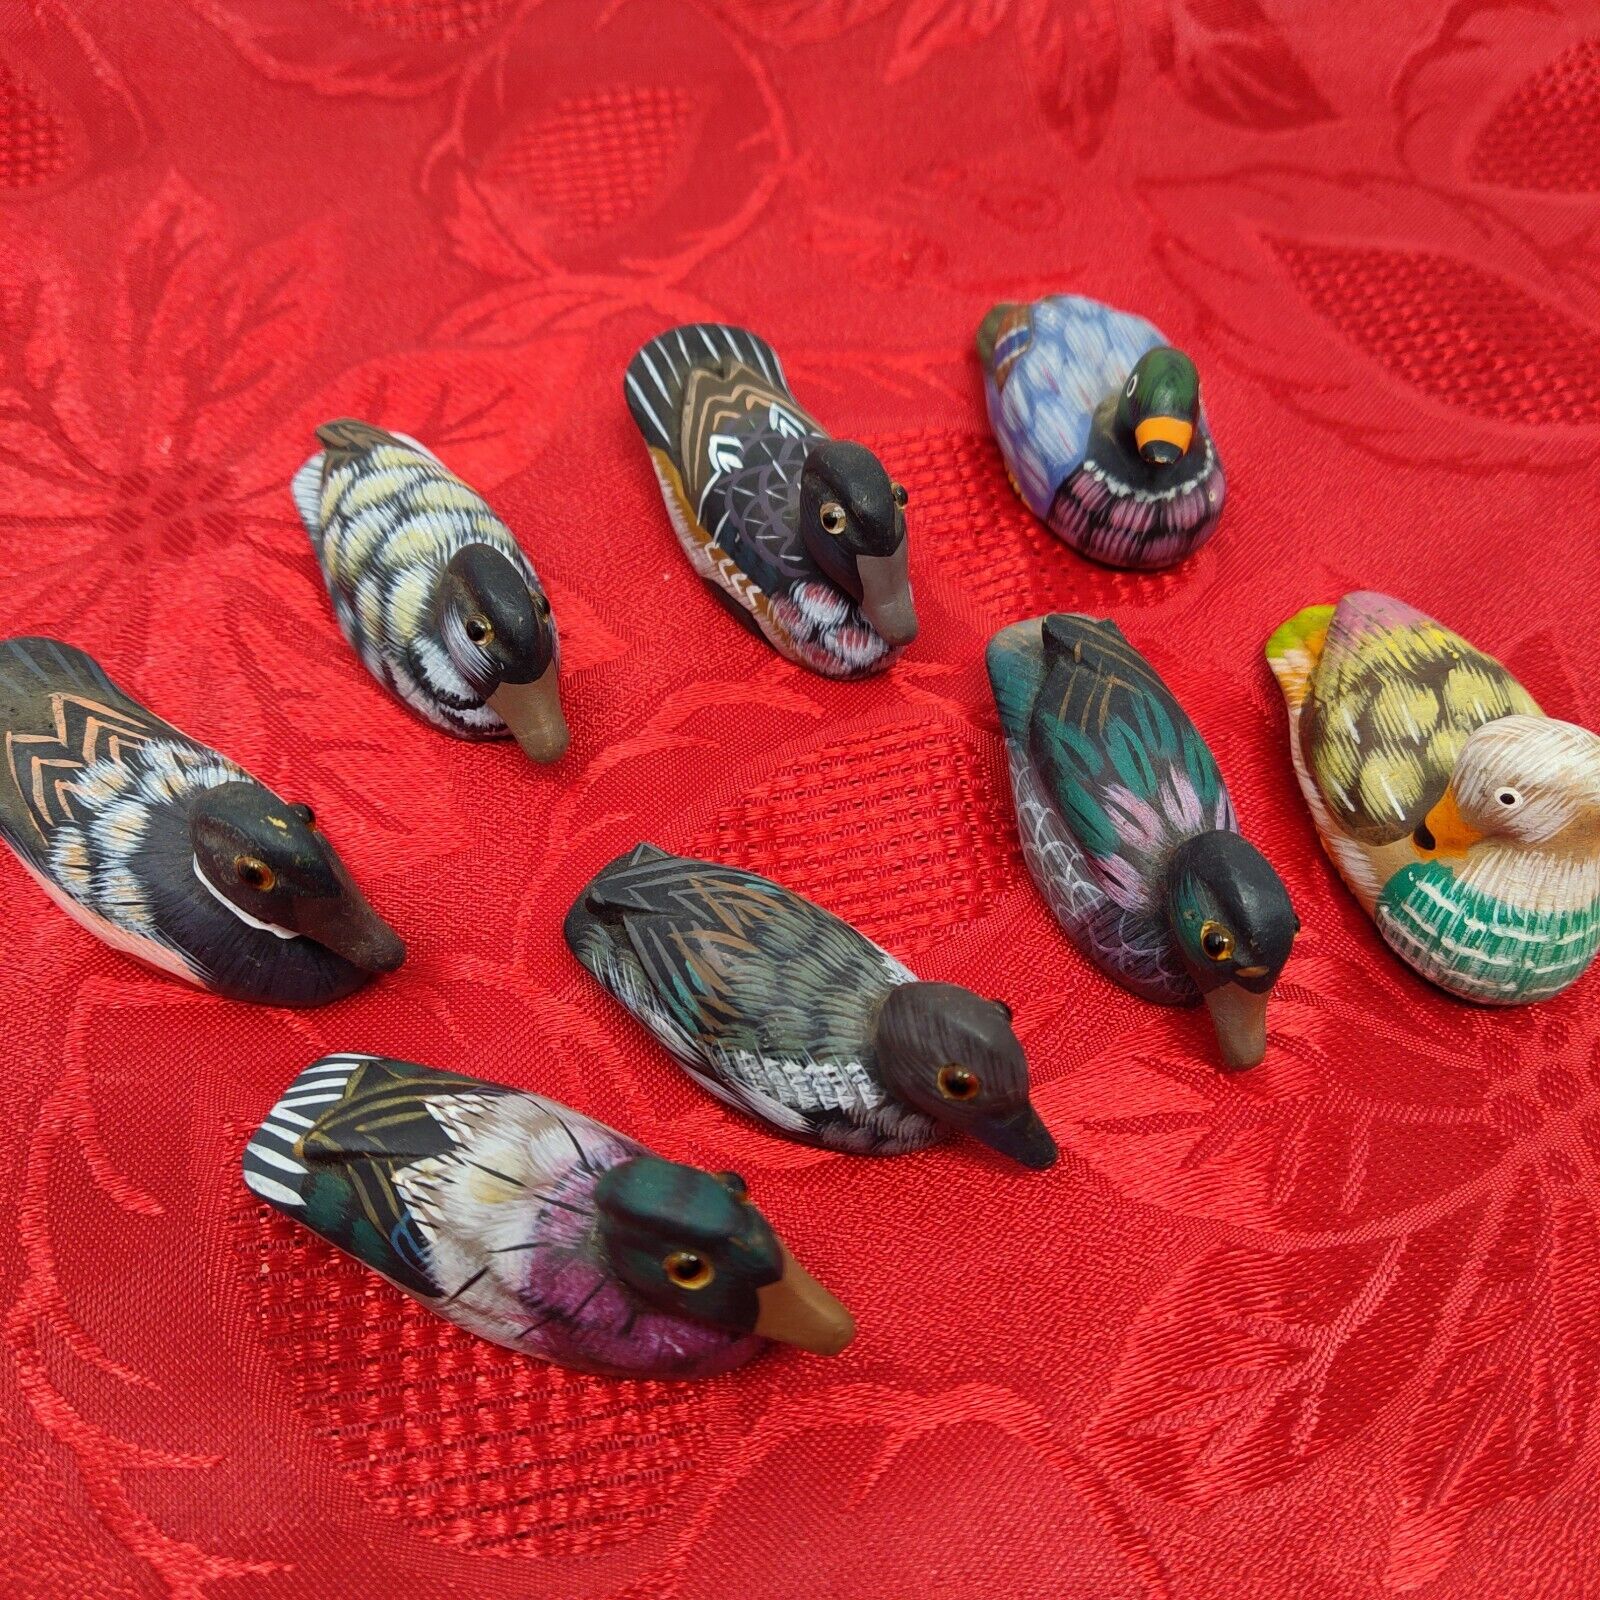 Lot of 8 Vintage Miniature Wood Ducks Hand Painted Figurines Glass Eyes